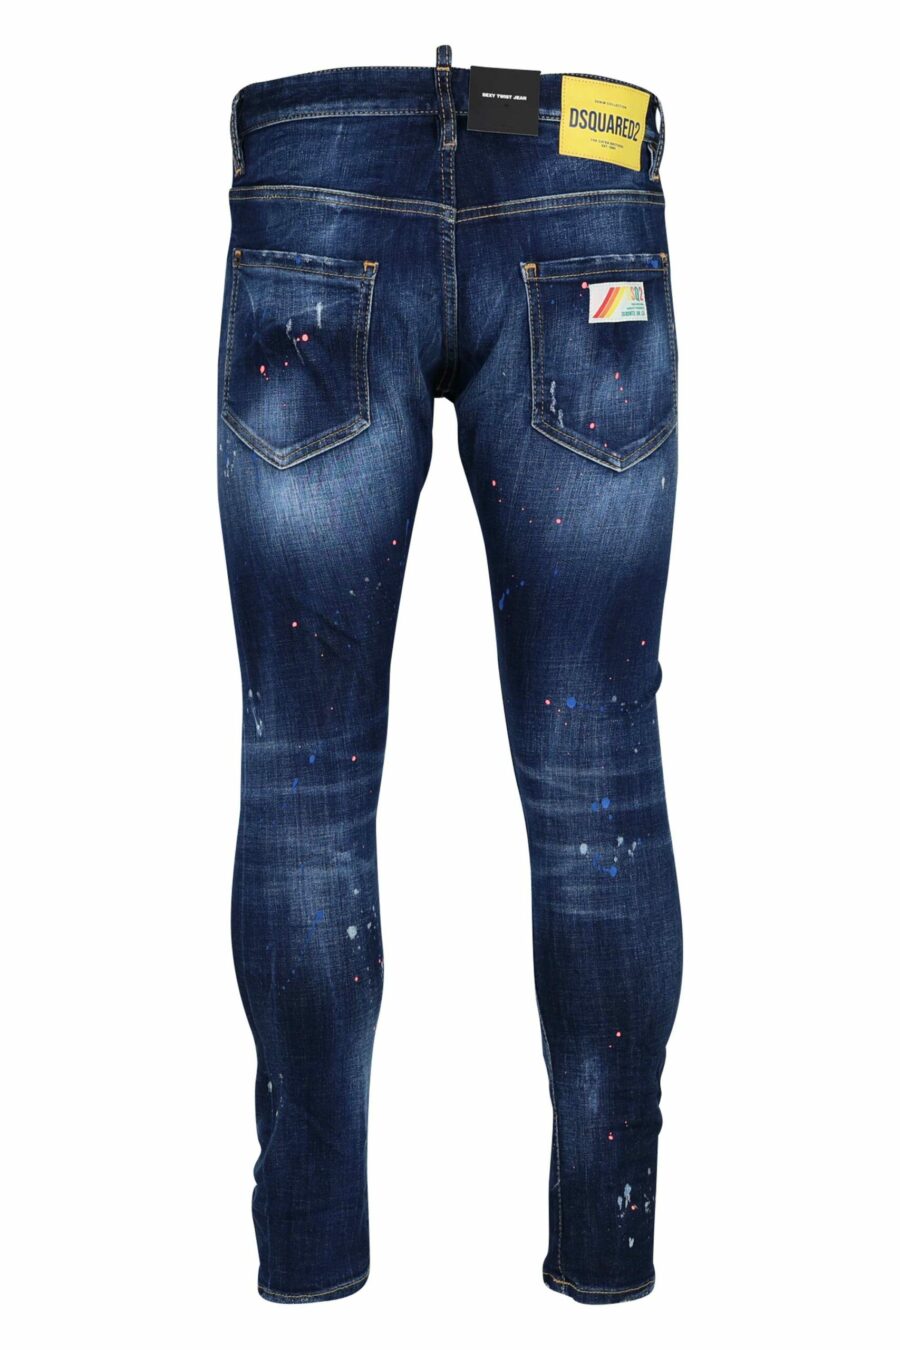 Pantalón vaquero azul "sexy twist jean" desgastado con pintura naranja - 8054148308292 2 scaled